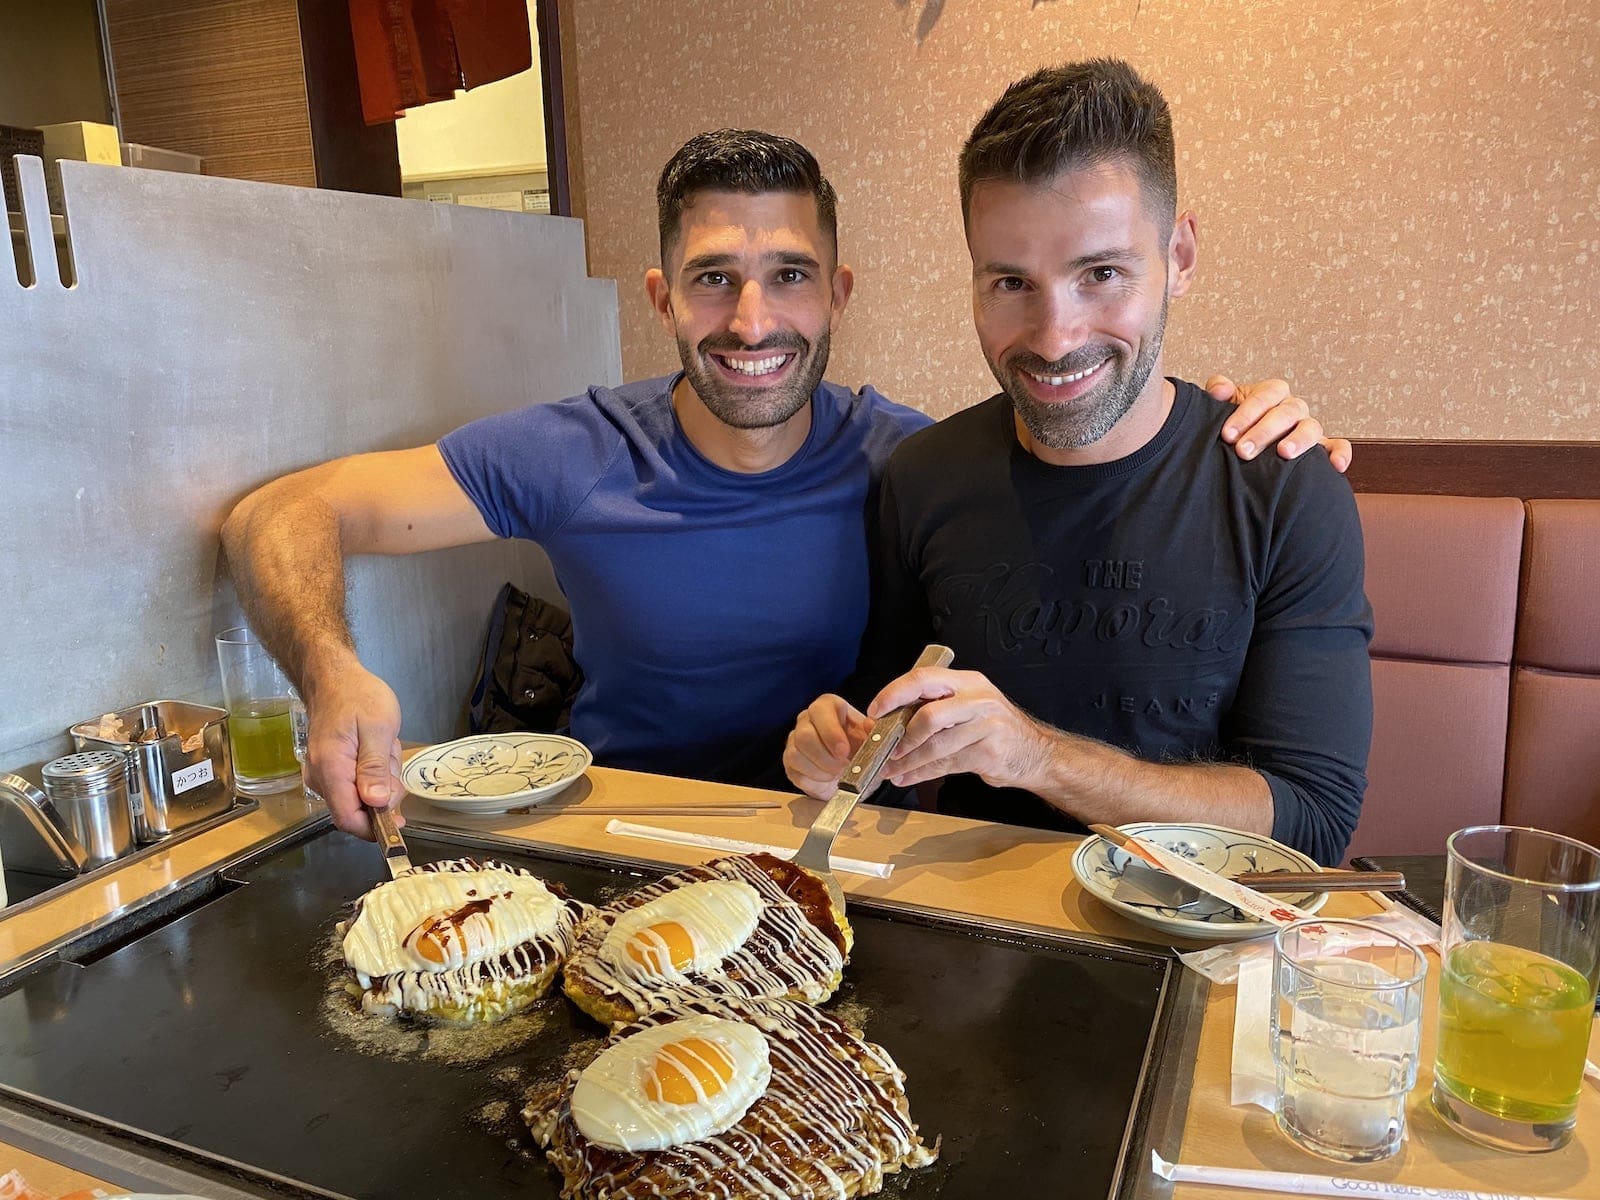 Two gay men enjoying a fried Japanese pancake.